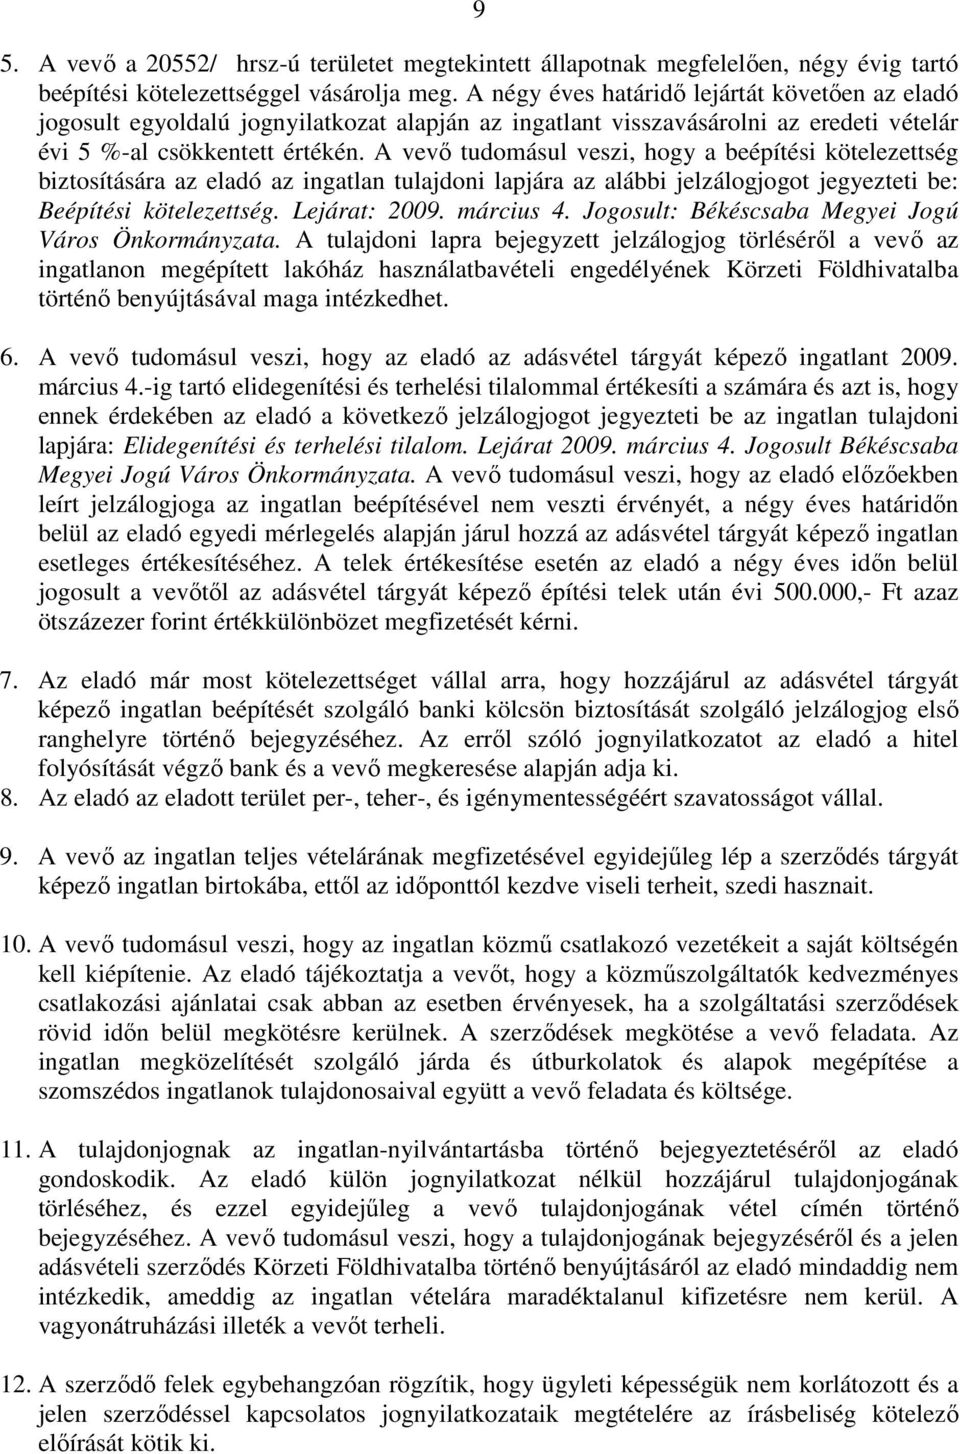 A vevı tudomásul veszi, hogy a beépítési kötelezettség biztosítására az eladó az ingatlan tulajdoni lapjára az alábbi jelzálogjogot jegyezteti be: Beépítési kötelezettség. Lejárat: 2009. március 4.